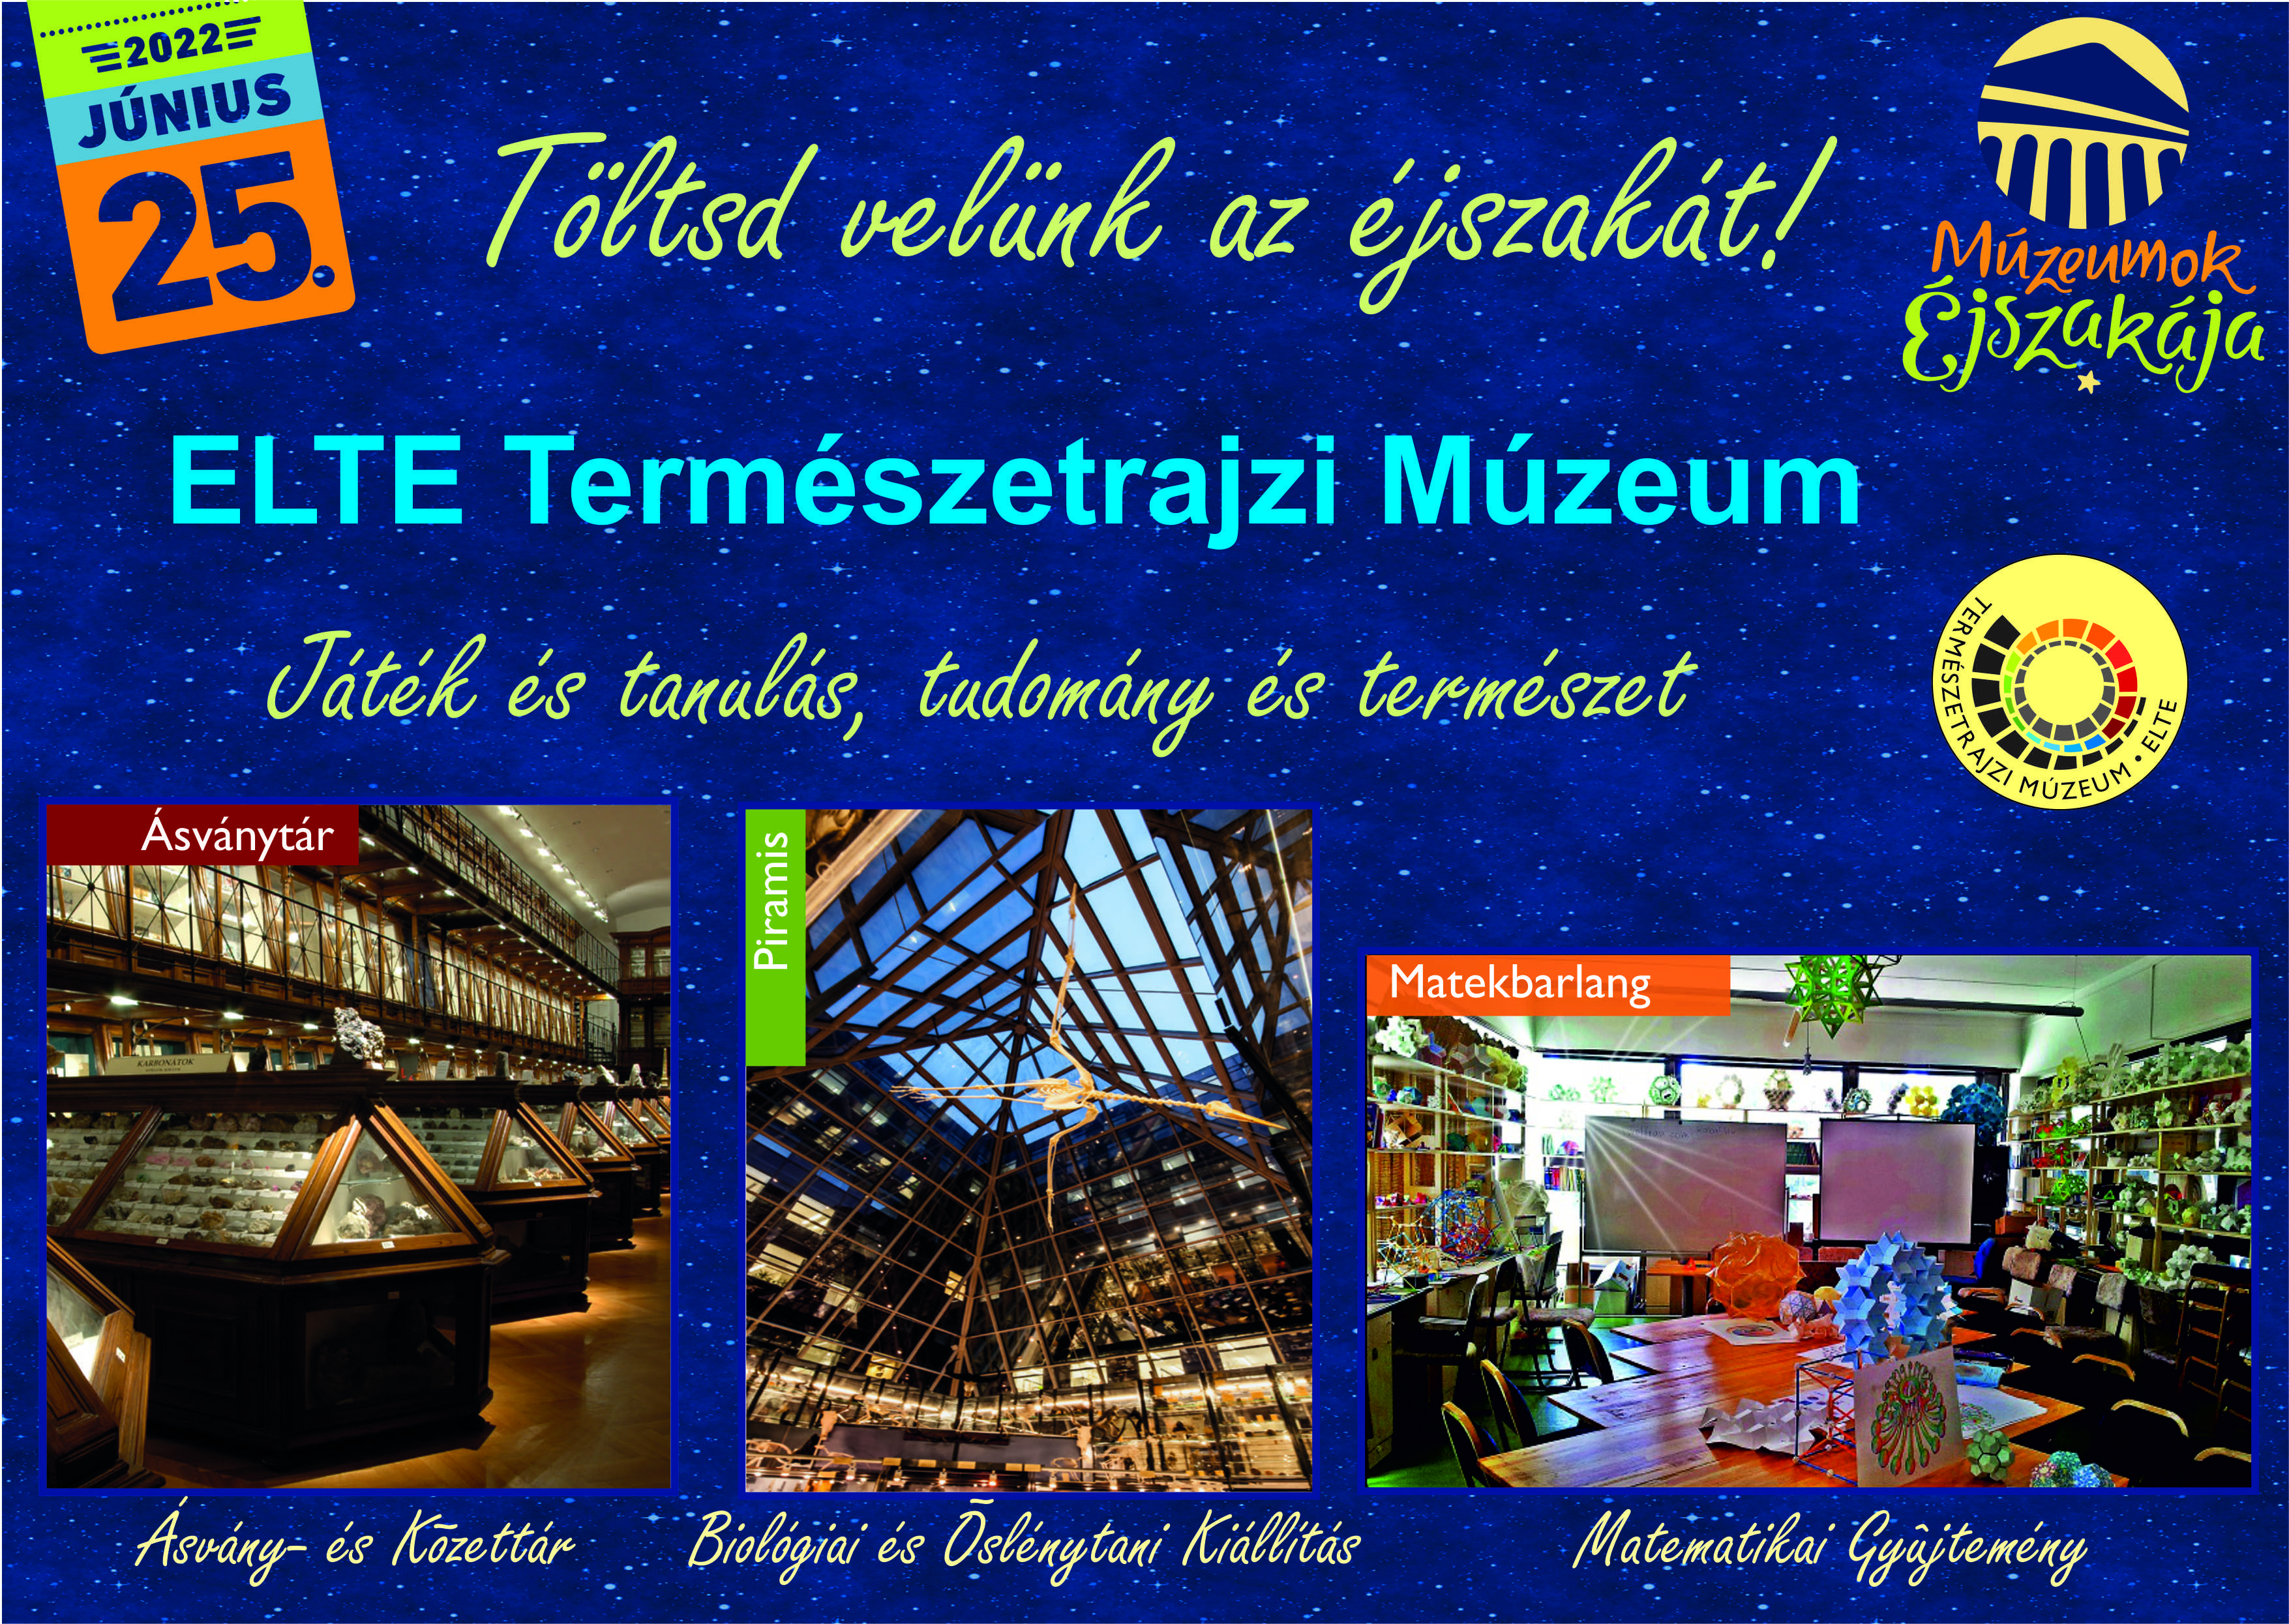 ELTE Természetrajzi Múzeum